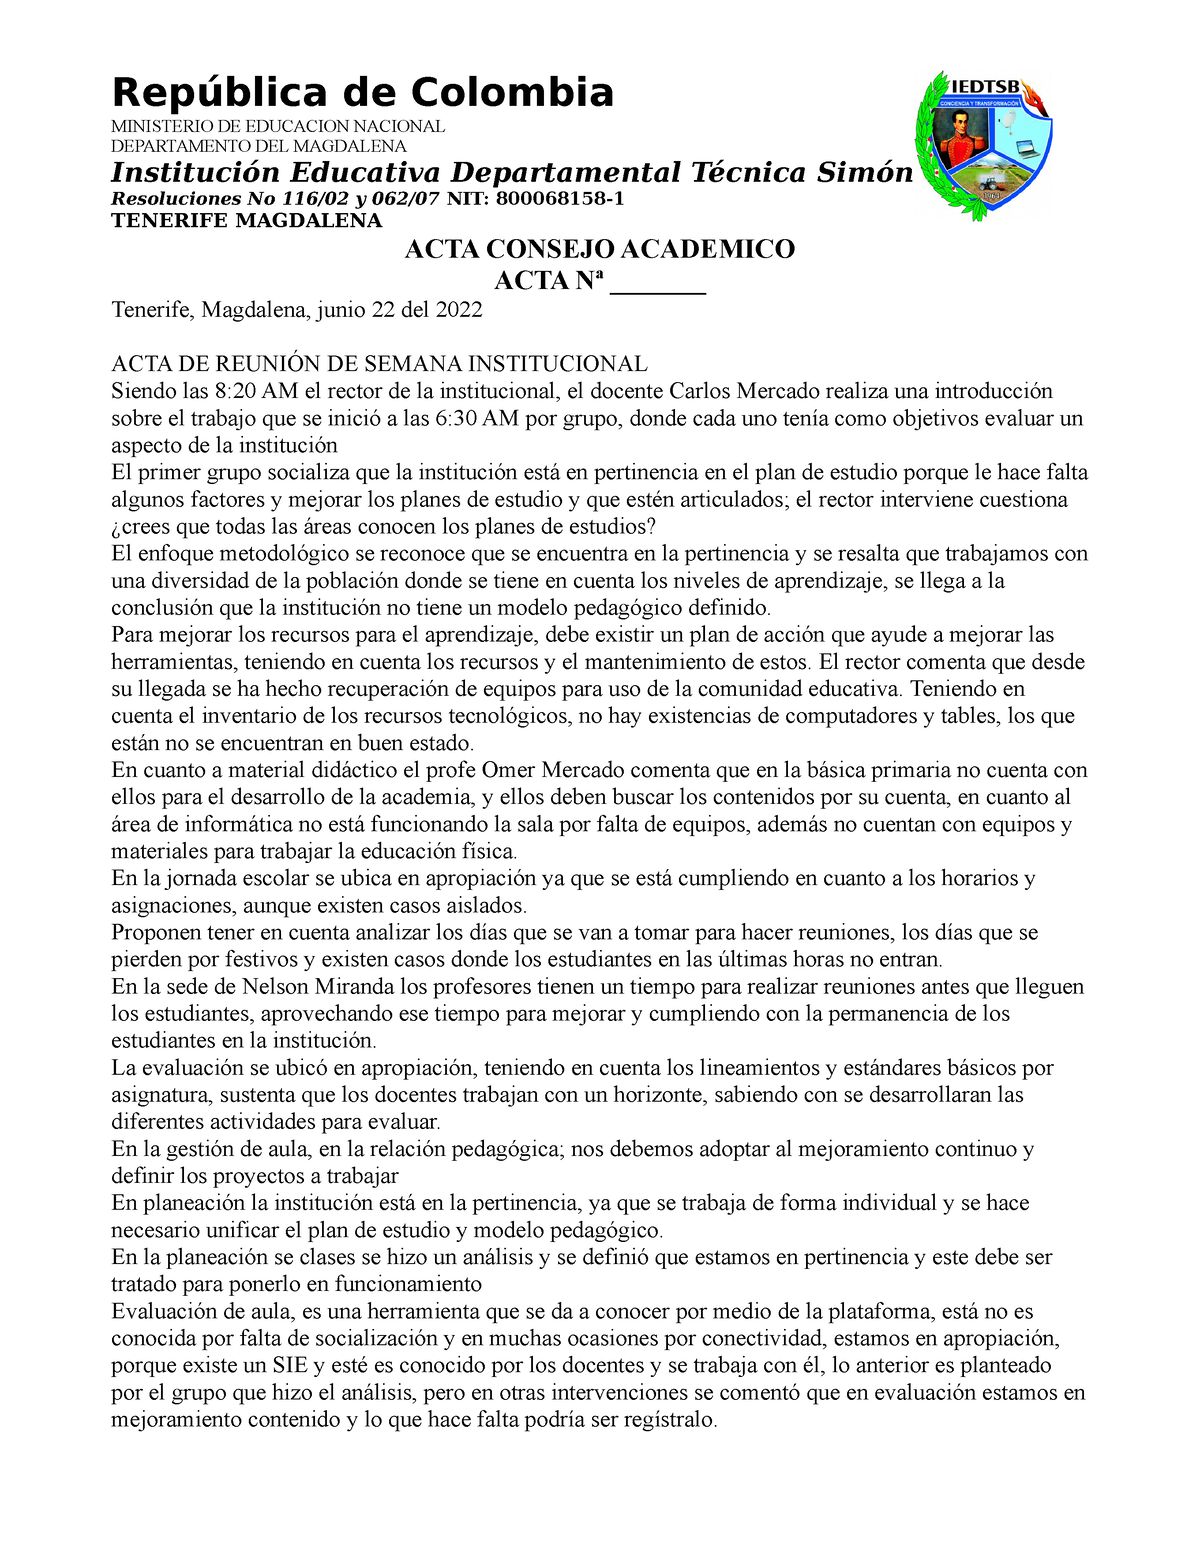 ACTA 002 Consejo Academico 22 DE Junio AÑO 2 - República de Colombia  MINISTERIO DE EDUCACION - Studocu